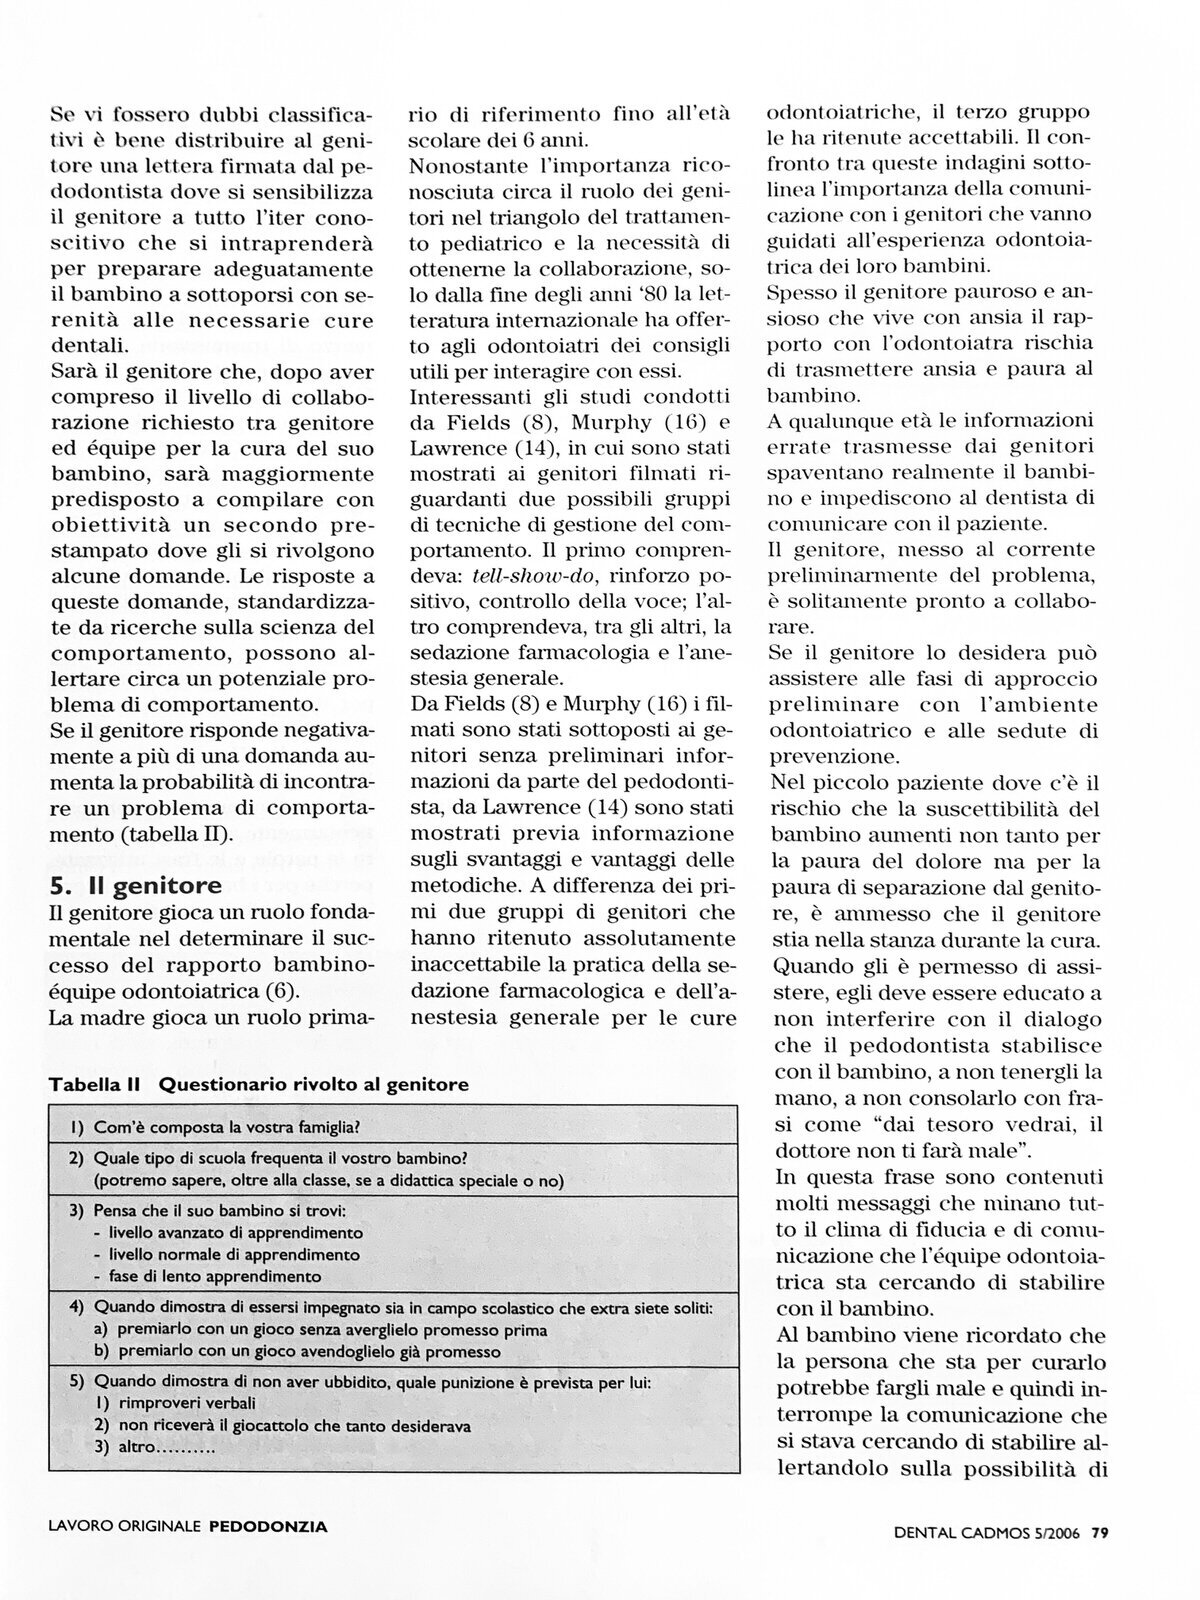 PUBBLICAZIONI -CRISTIANA ALICINO-15